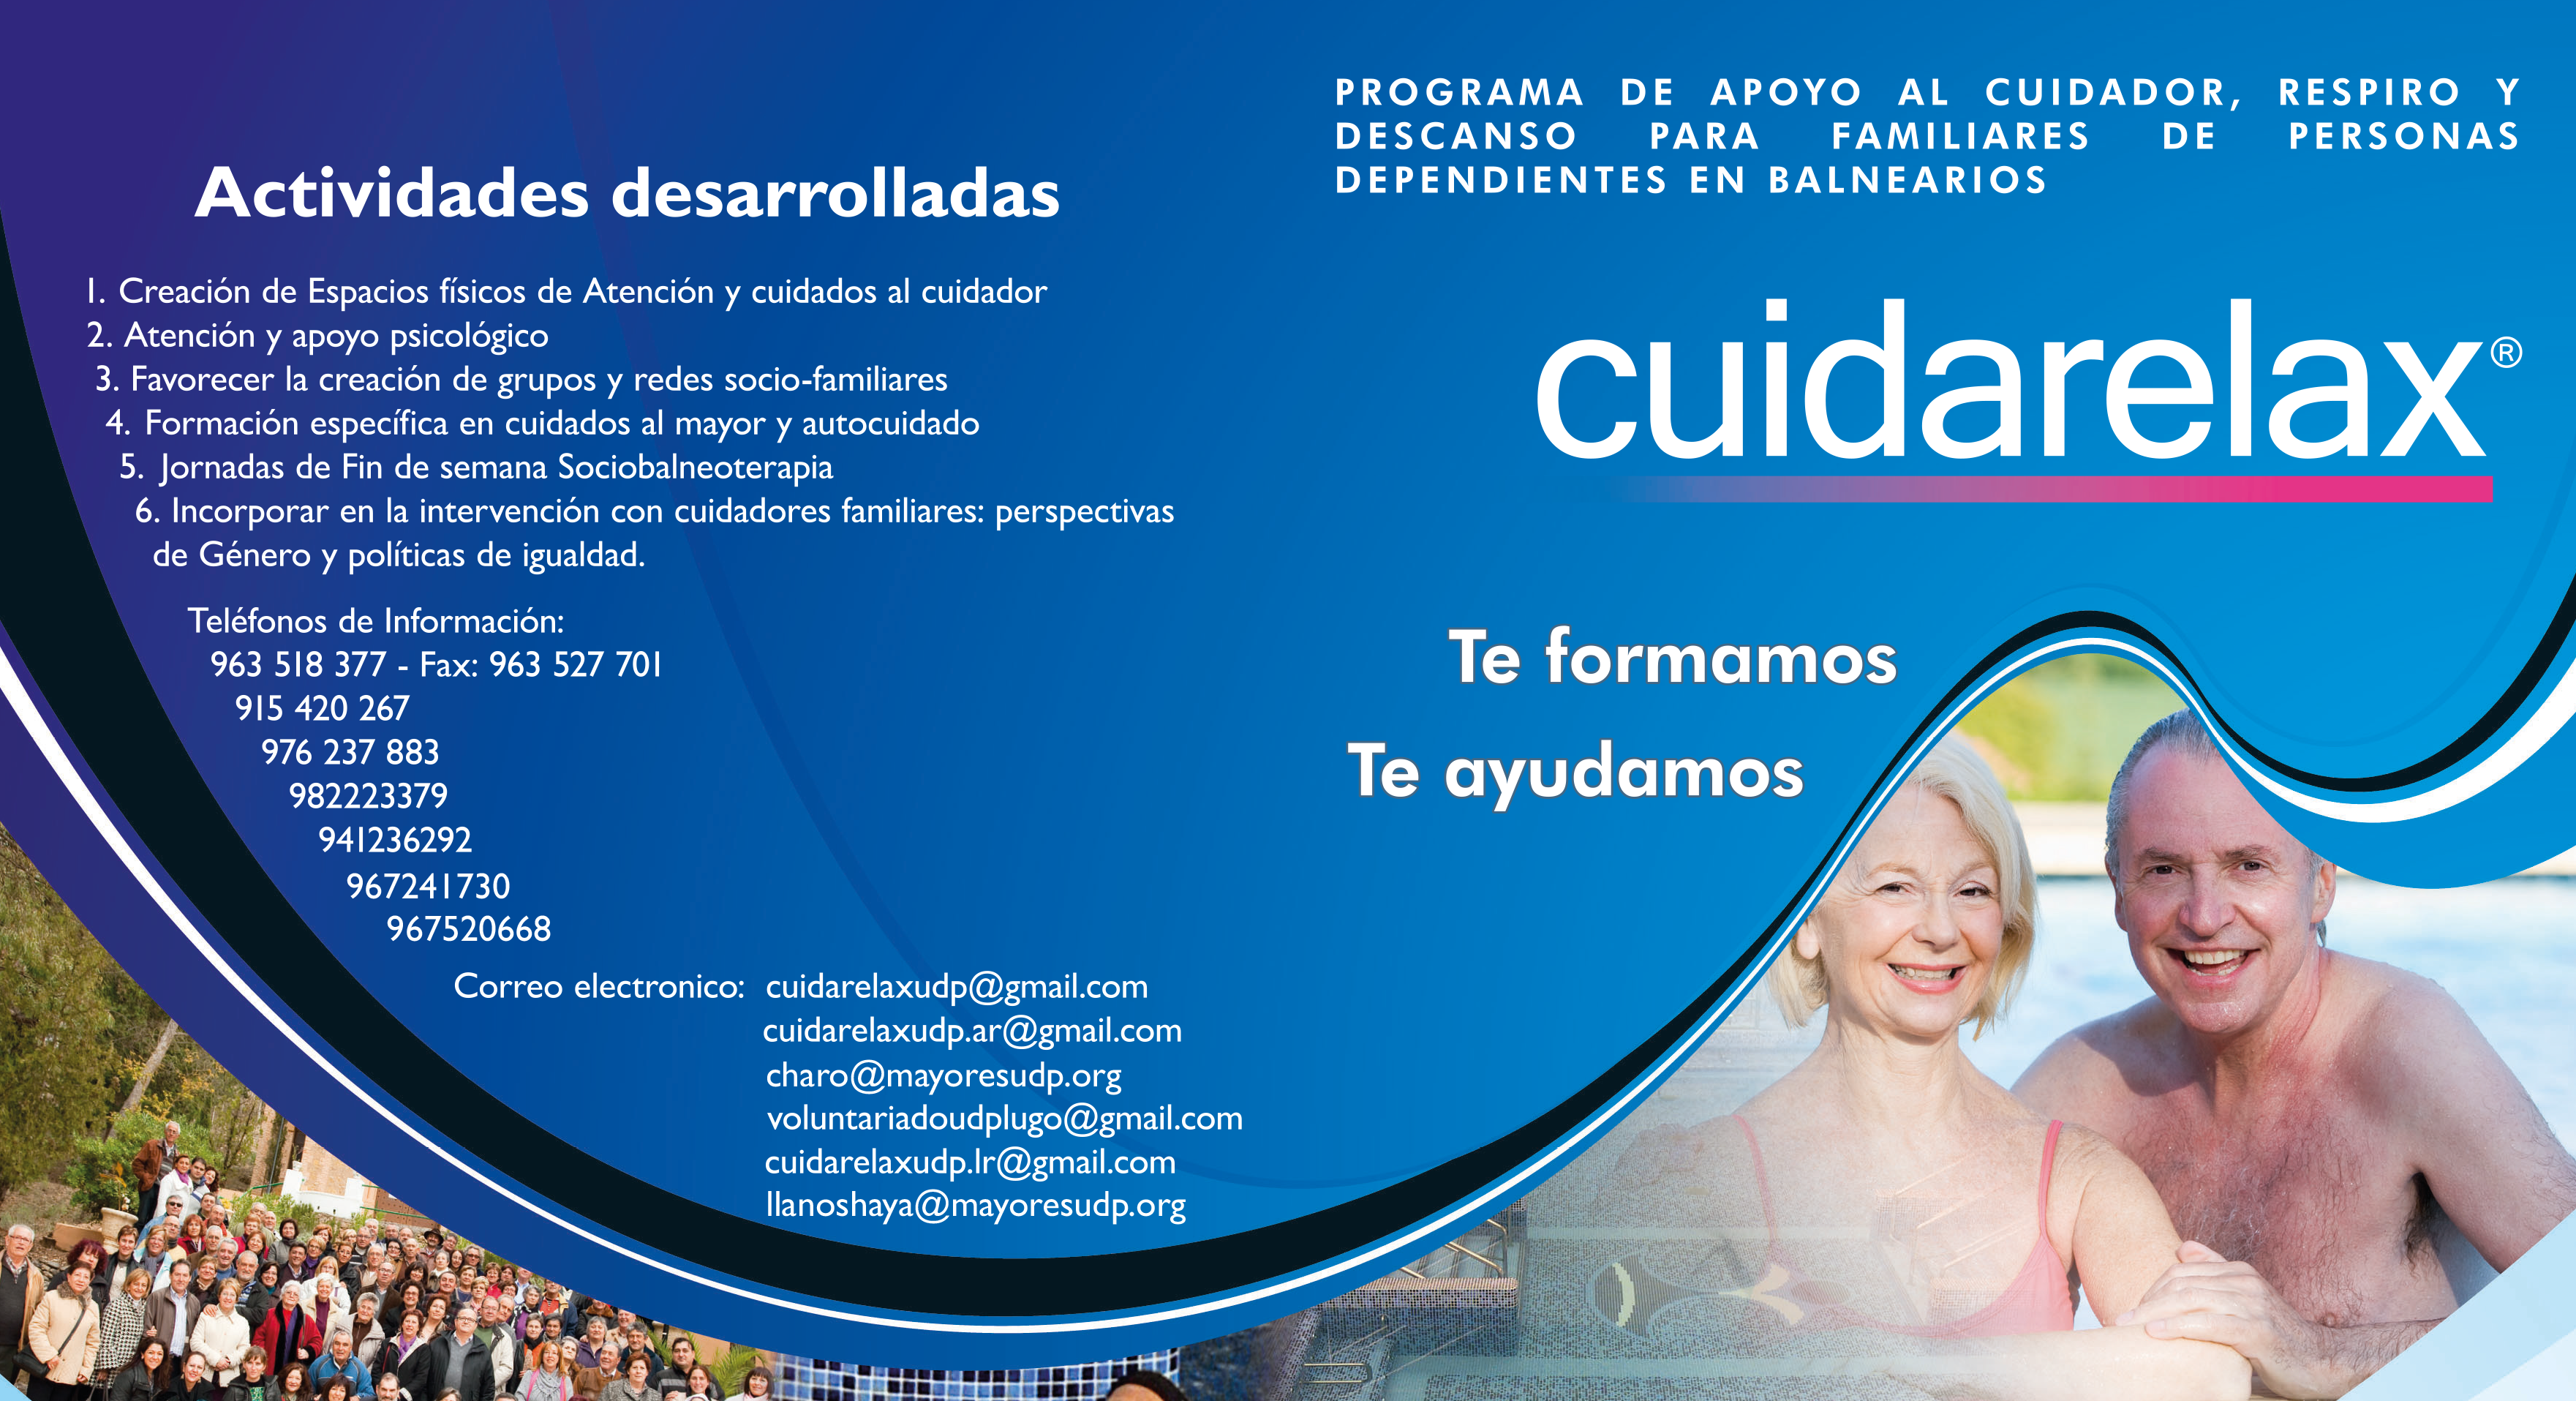 Inicio del programa Cuidarelax 2017, en Galicia